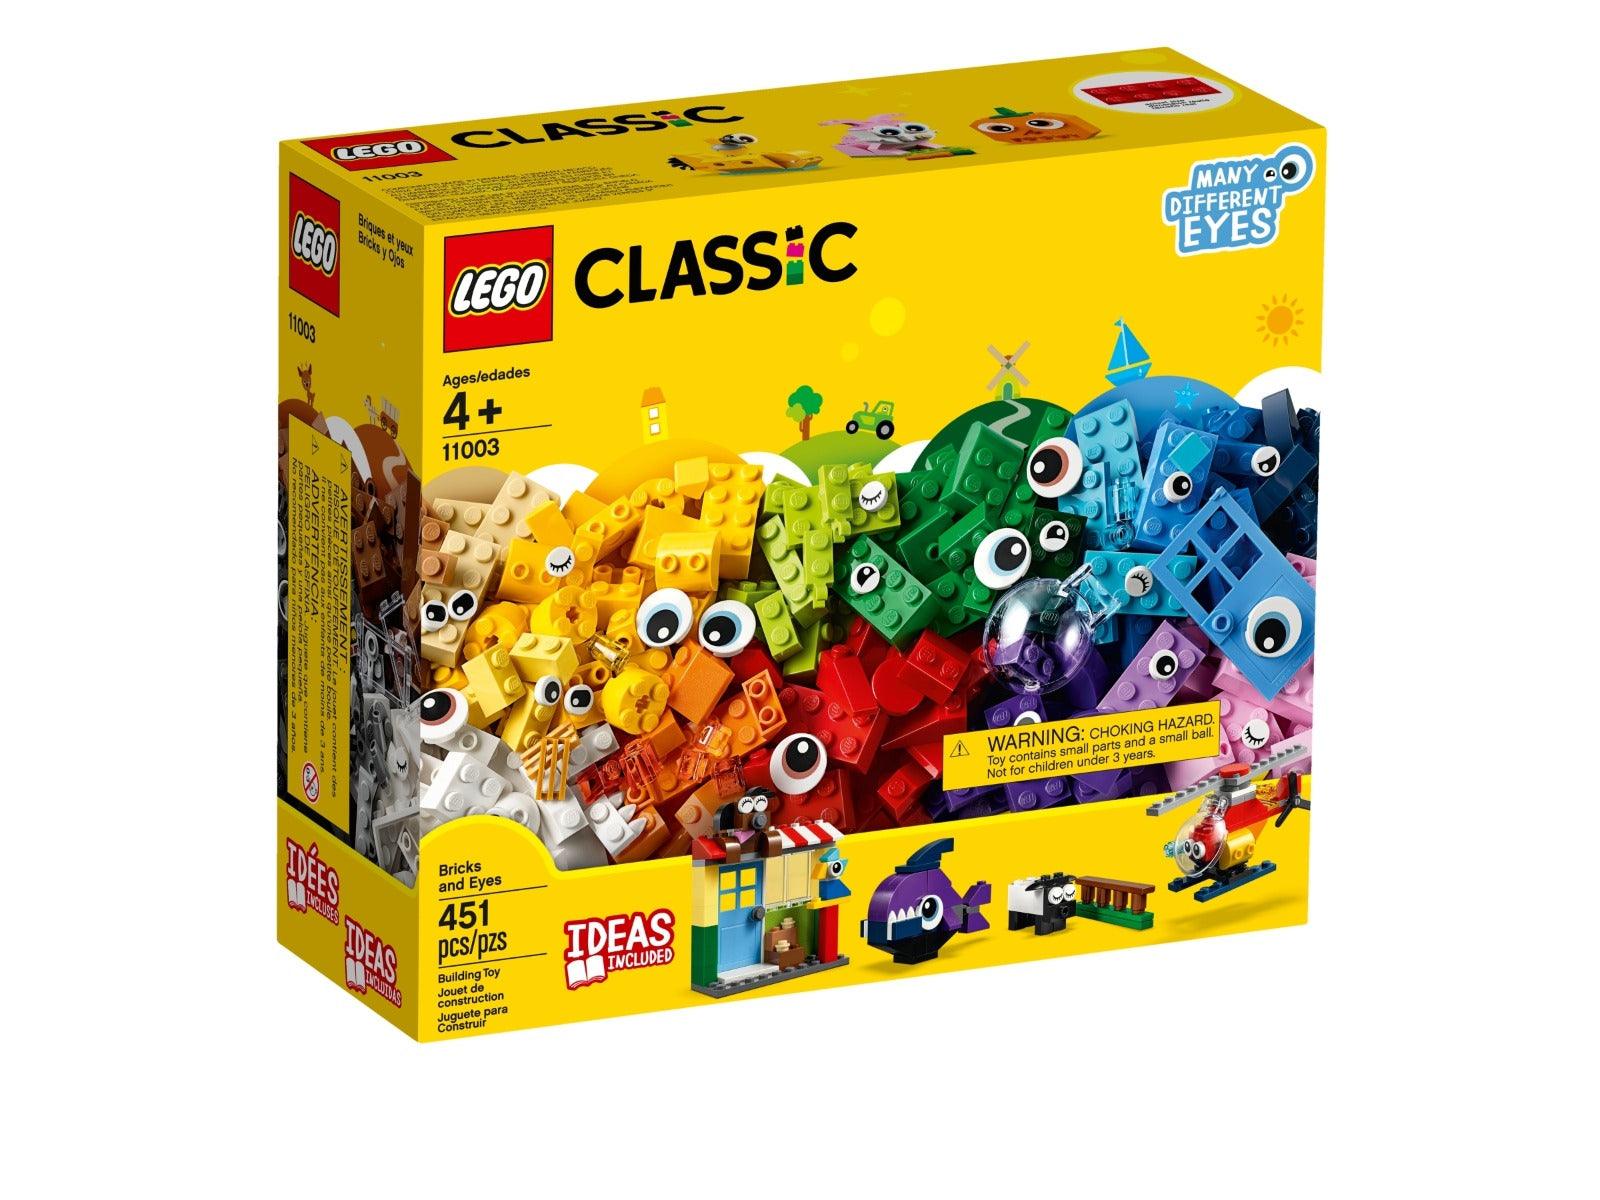 LEGO Classic Bricks and Eyes